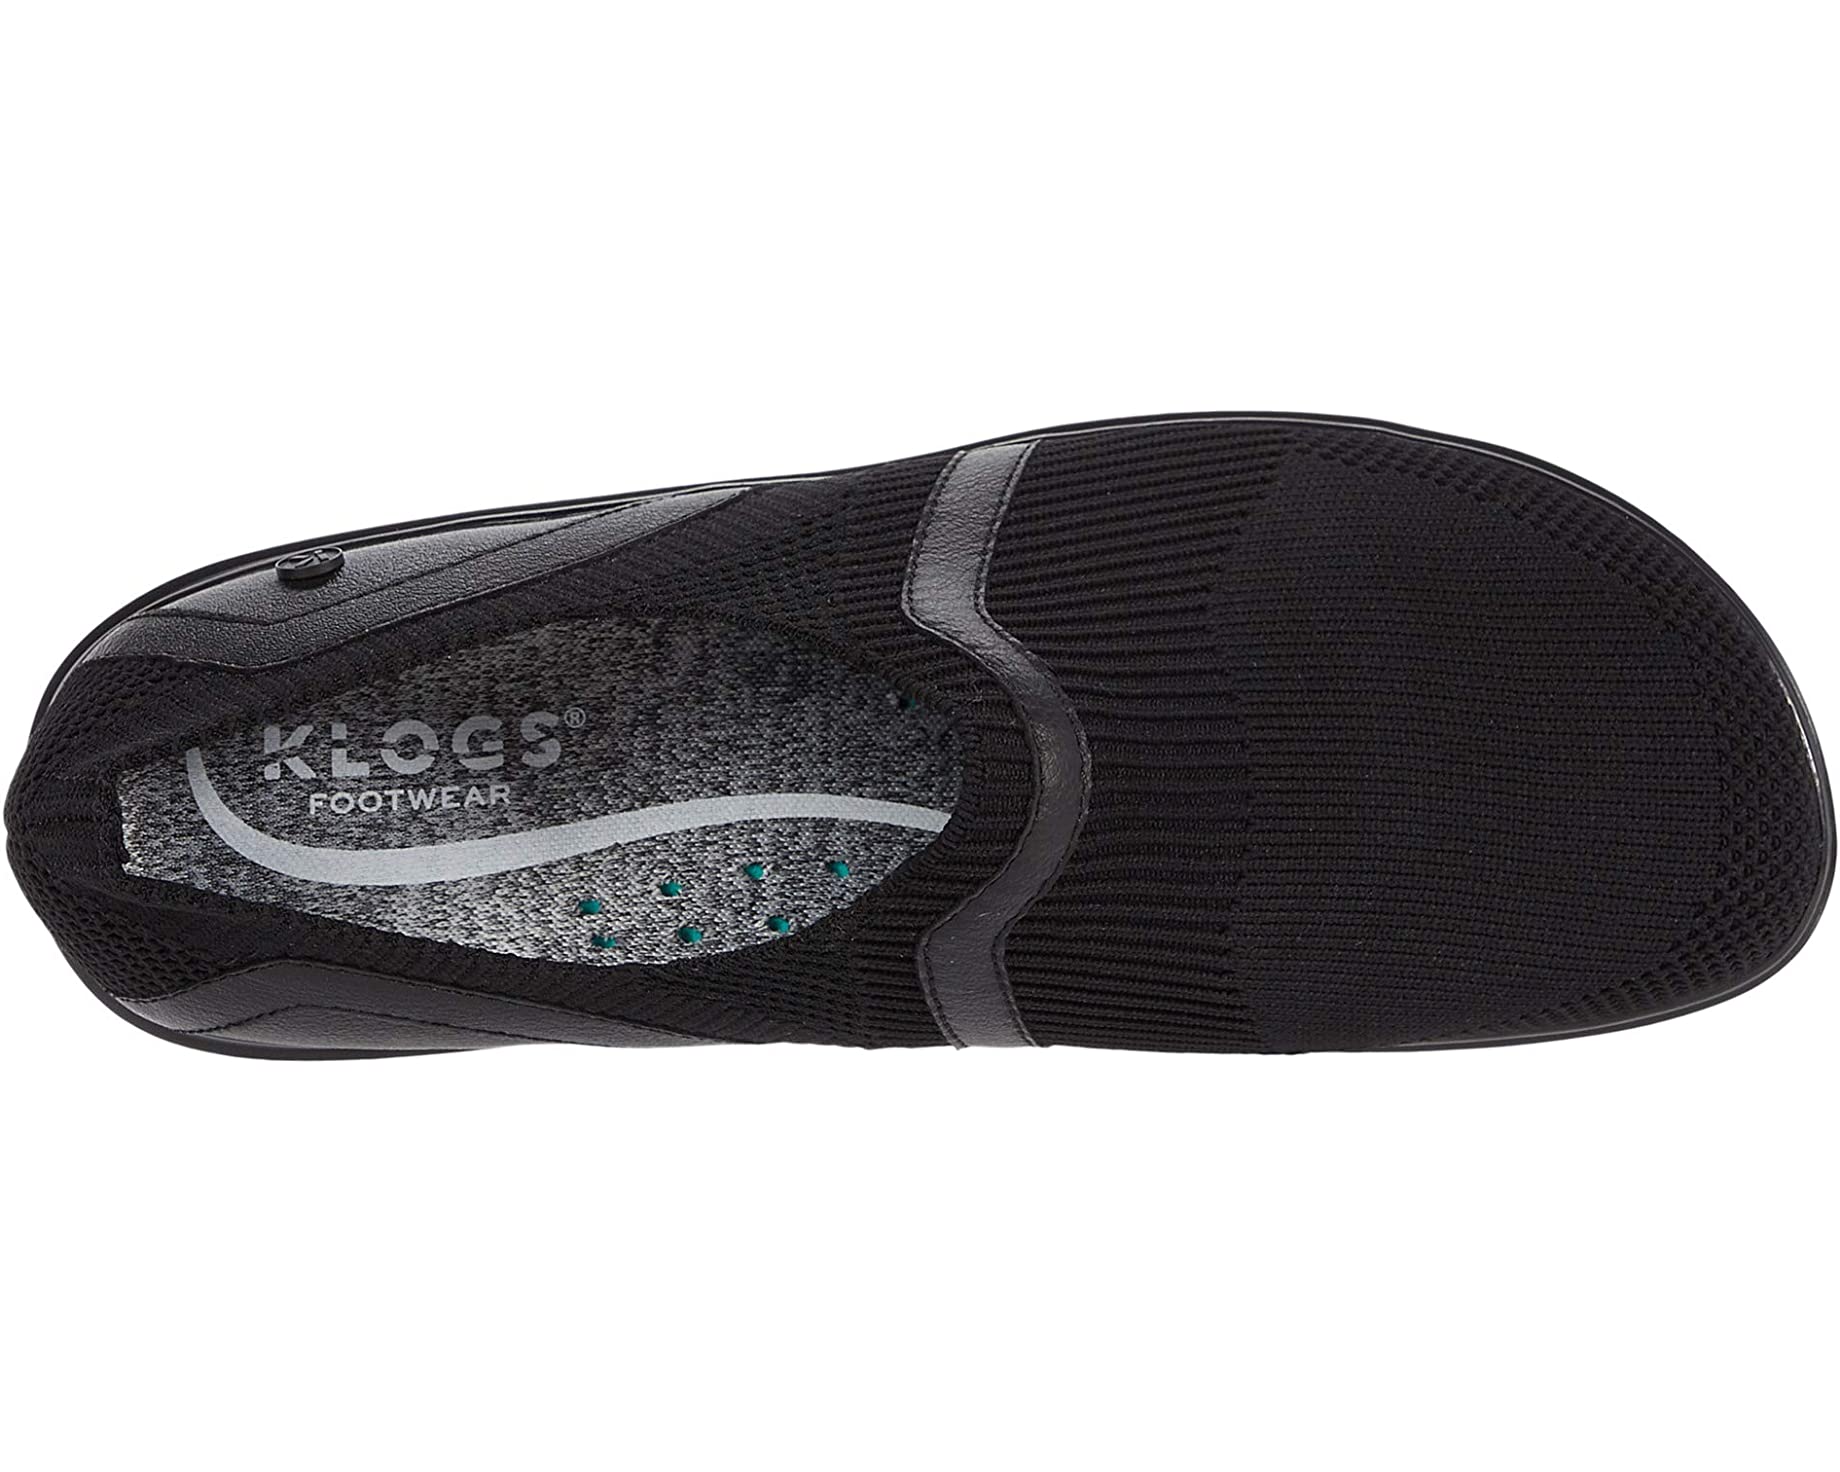 Кроссовки Evolve Klogs Footwear, черный